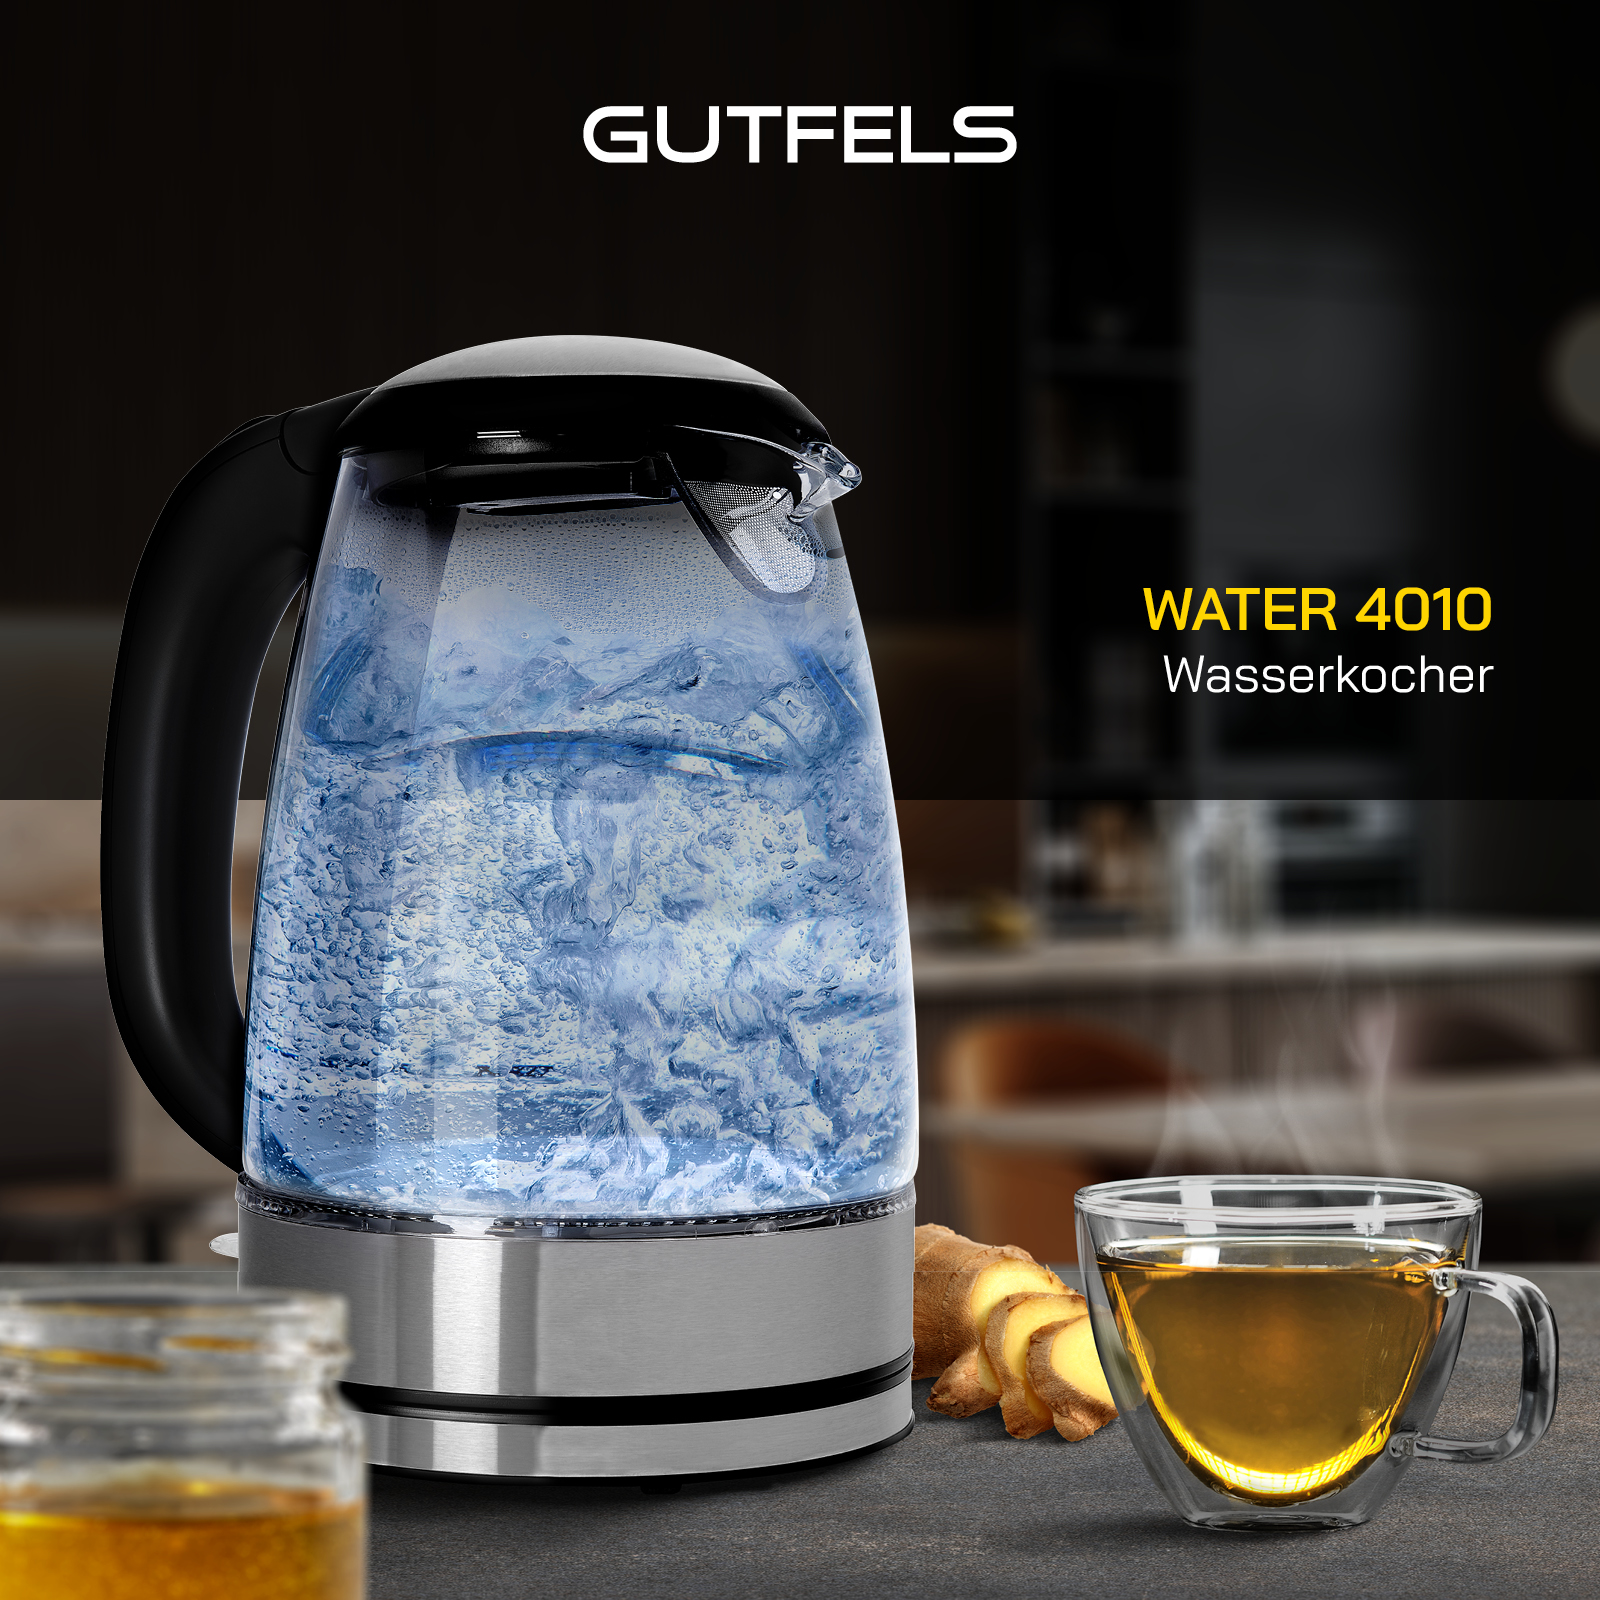 GUTFELS WATER 4010 Wasserkocher, Schwarz-Glas